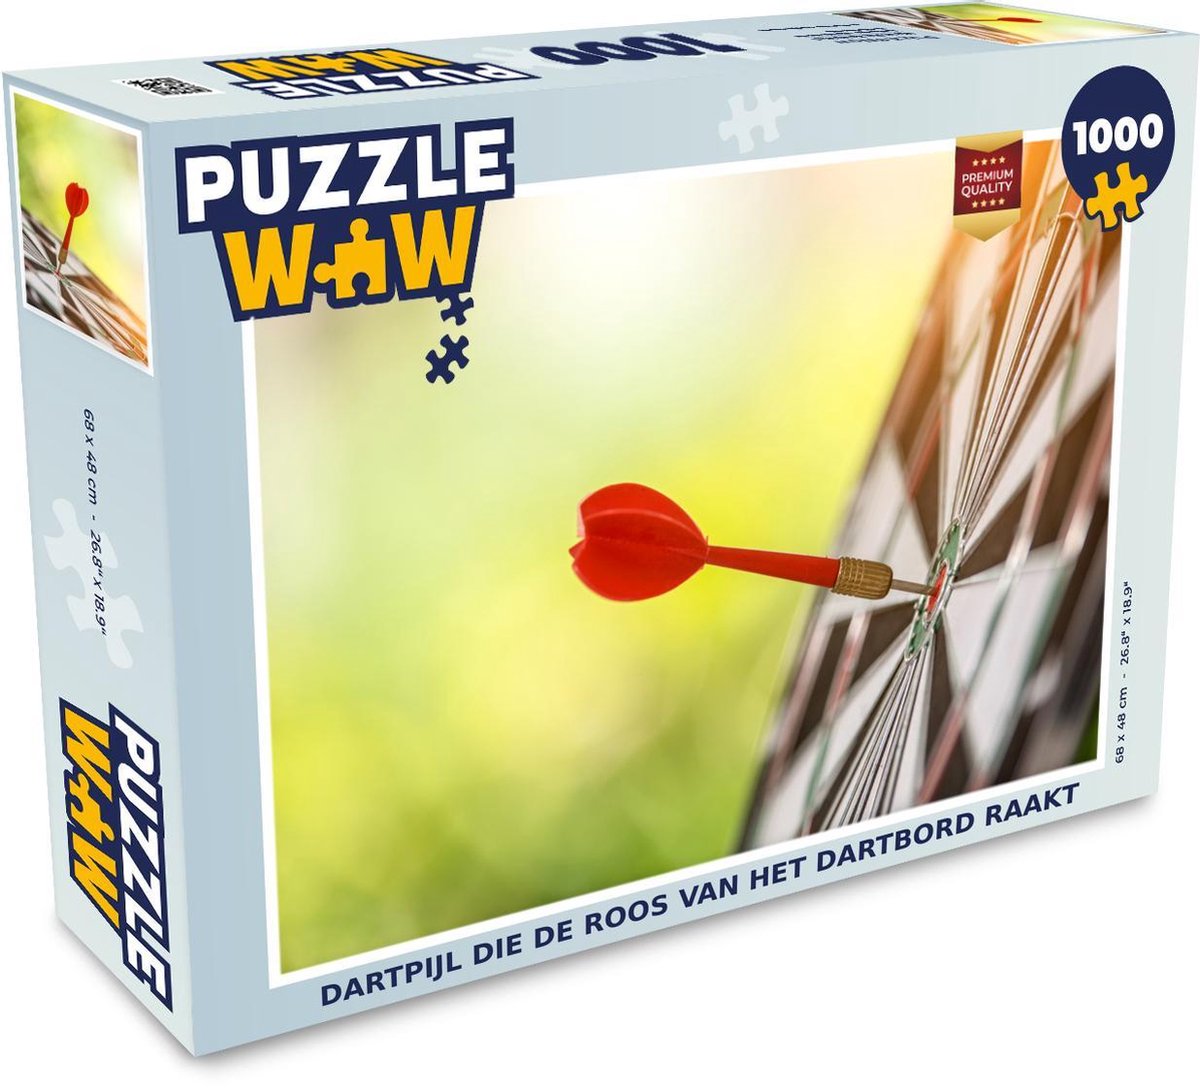 Puzzel 1000 stukjes volwassenen Darten 1000 stukjes - Dartpijl die de roos van het dartbord raakt - PuzzleWow heeft +100000 puzzels